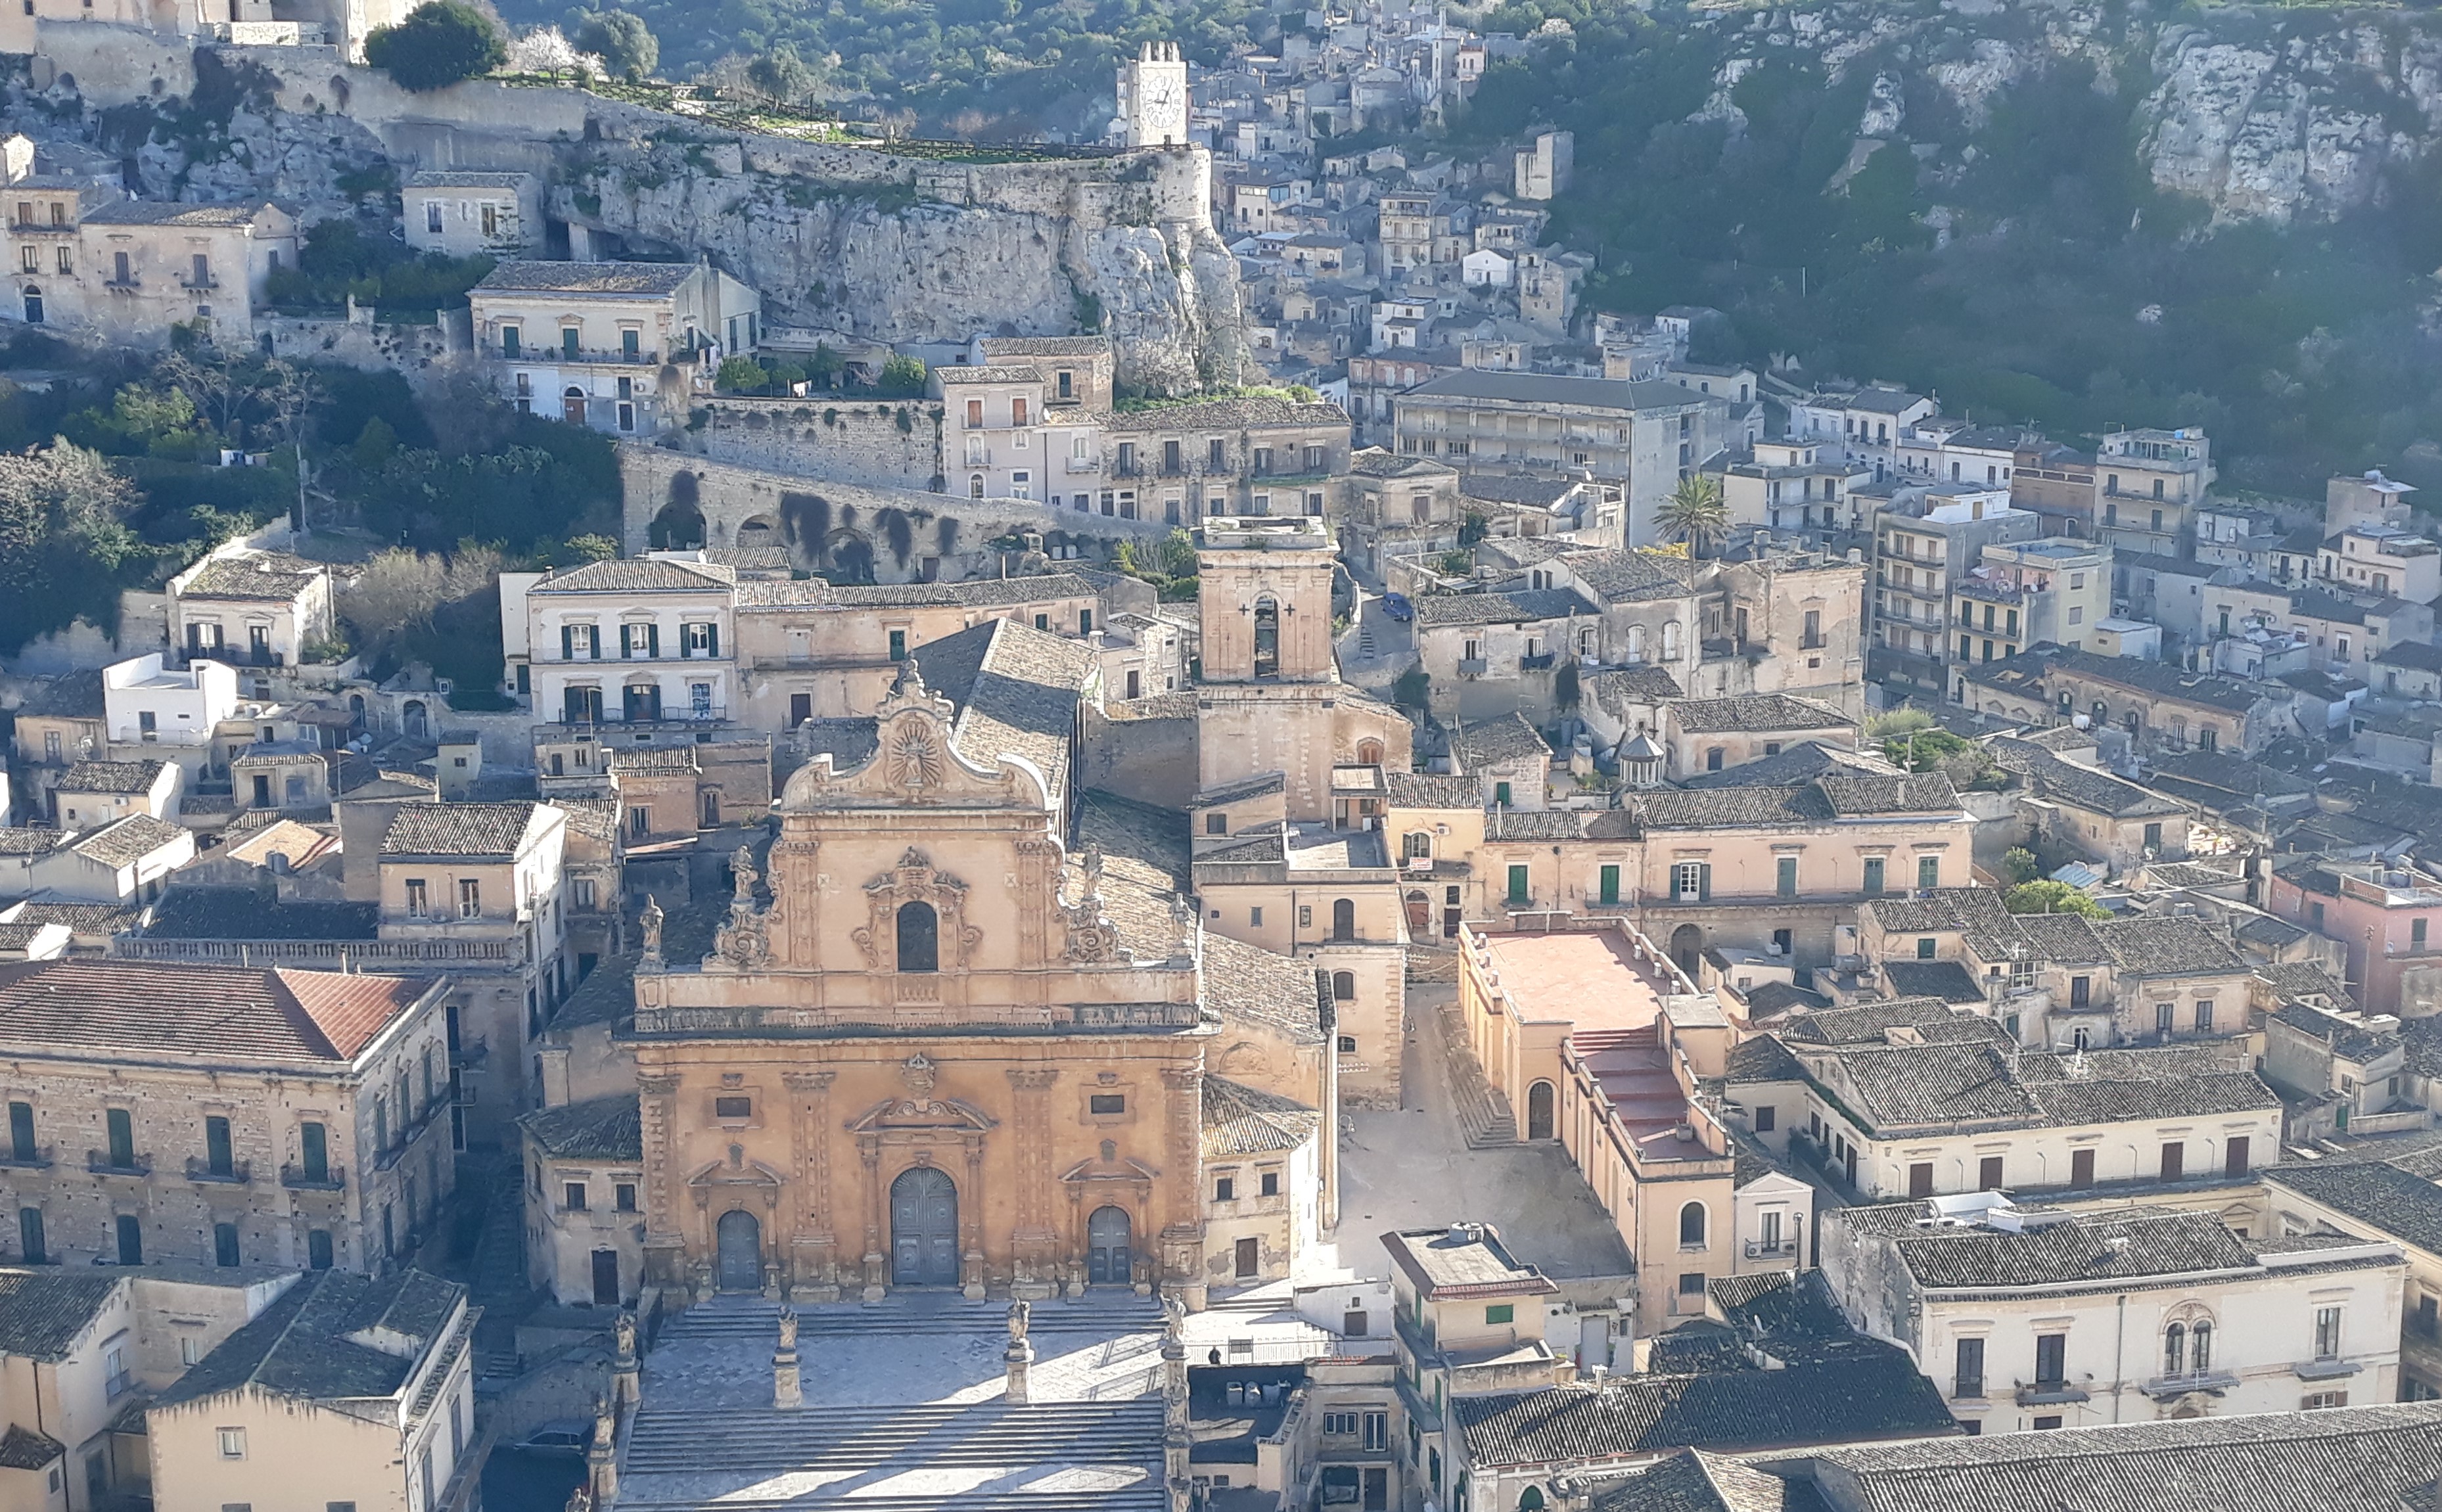 Sostegno alle città d'arte, 13 comuni siciliani possono concorrere a contributi statali